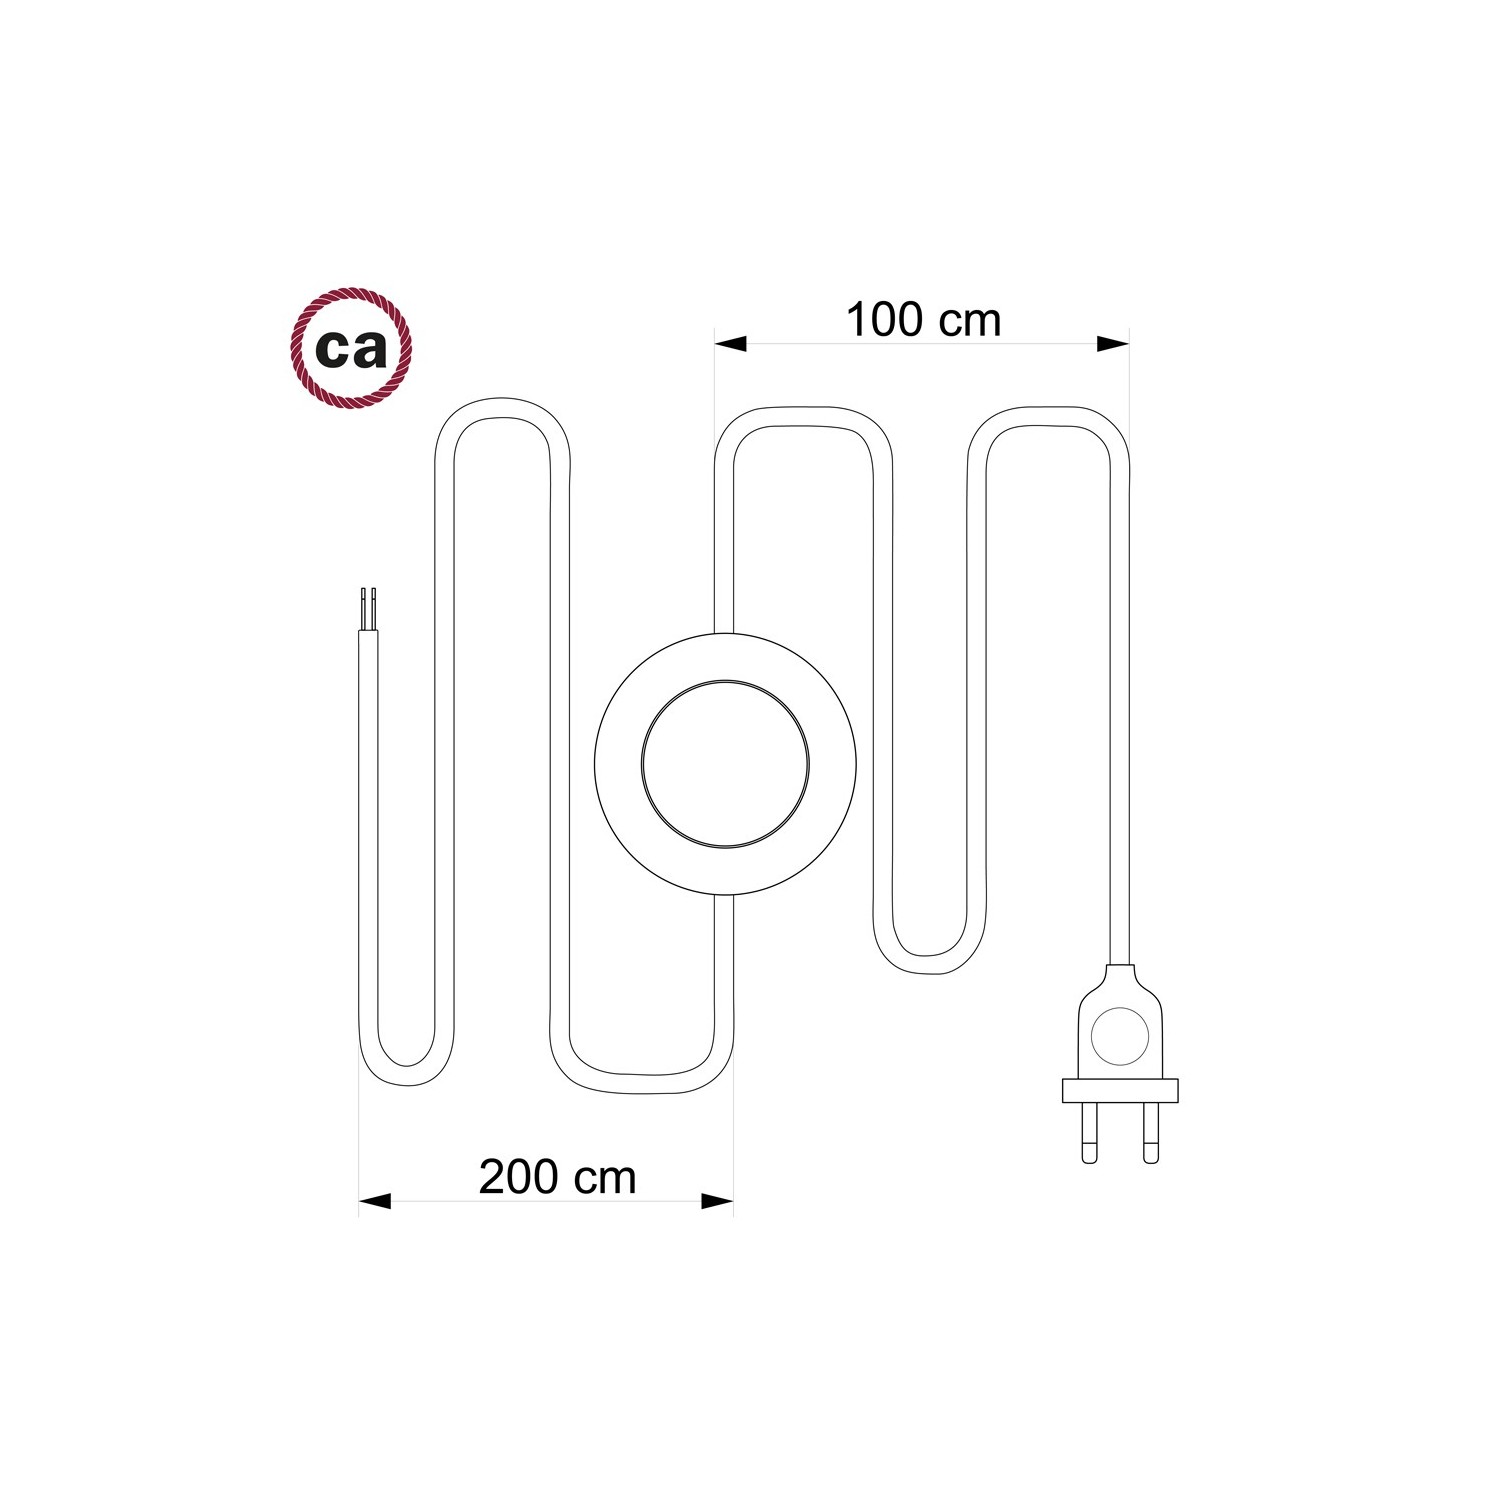 Cordon pour lampadaire, câble TM08 Effet Soie Fuchsia 3 m. Choisissez la couleur de la fiche et de l'interrupteur!